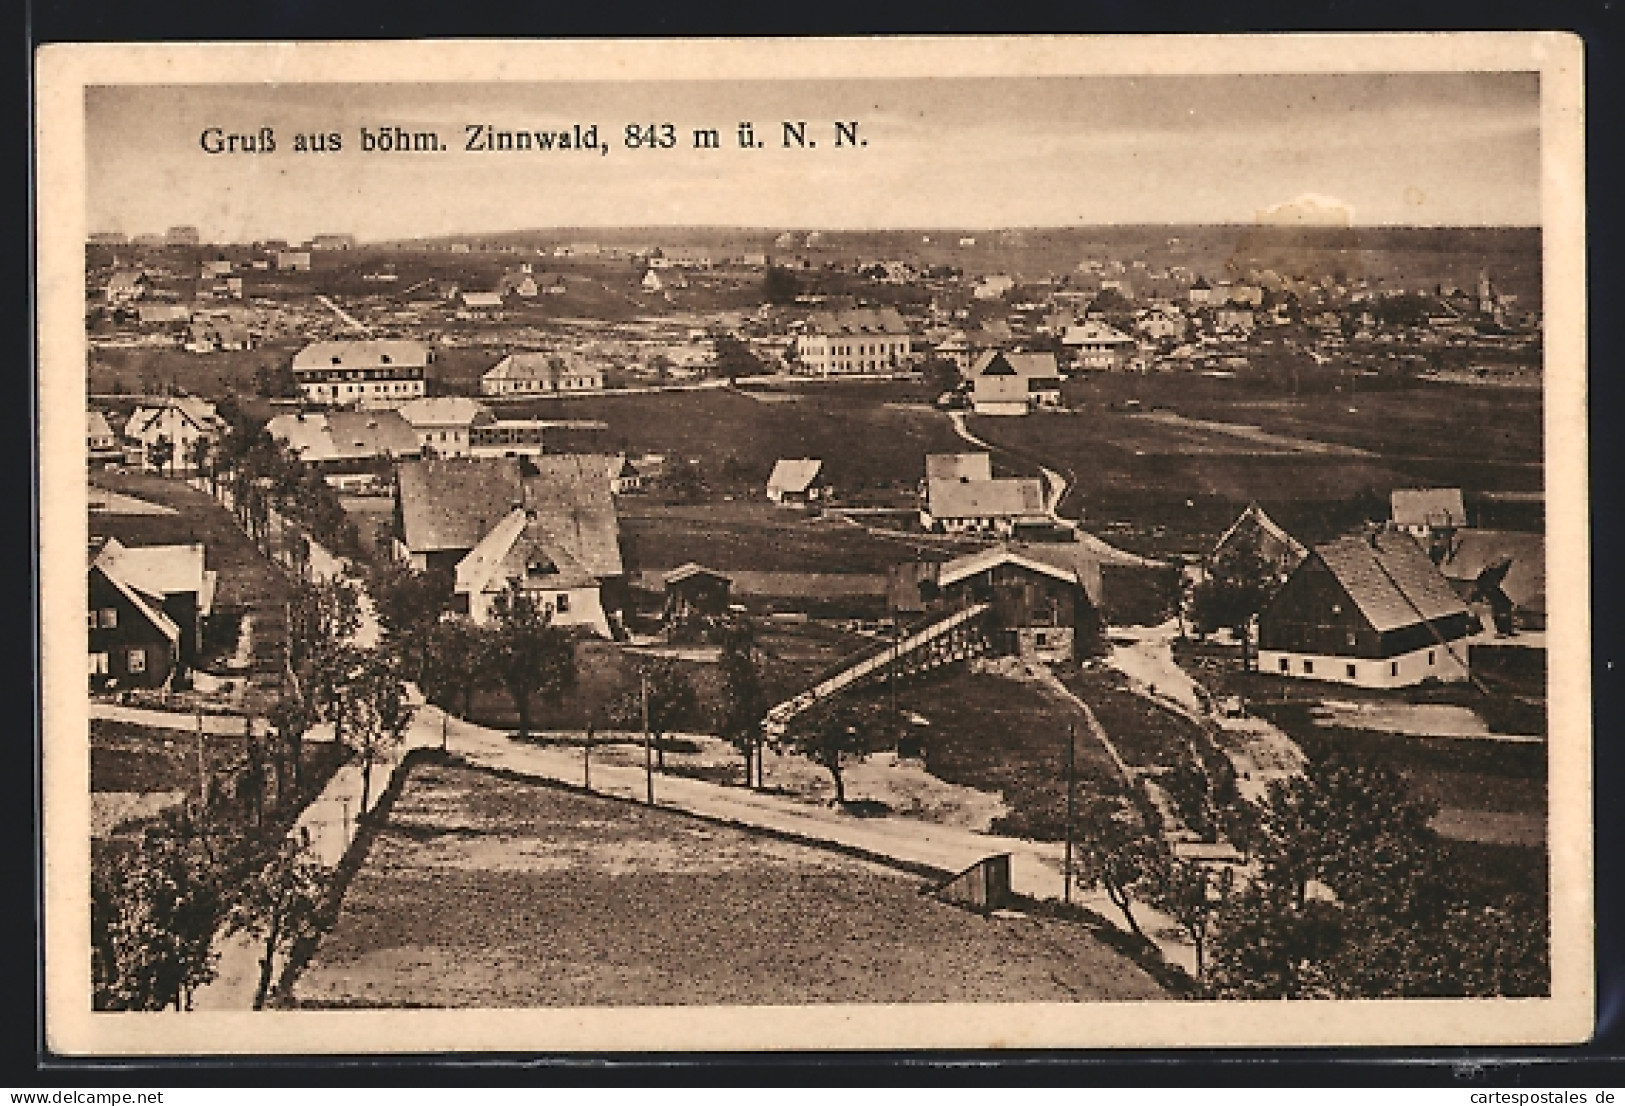 AK Böhm. Zinnwald, Blick über Verstreute Ortschaft  - Czech Republic